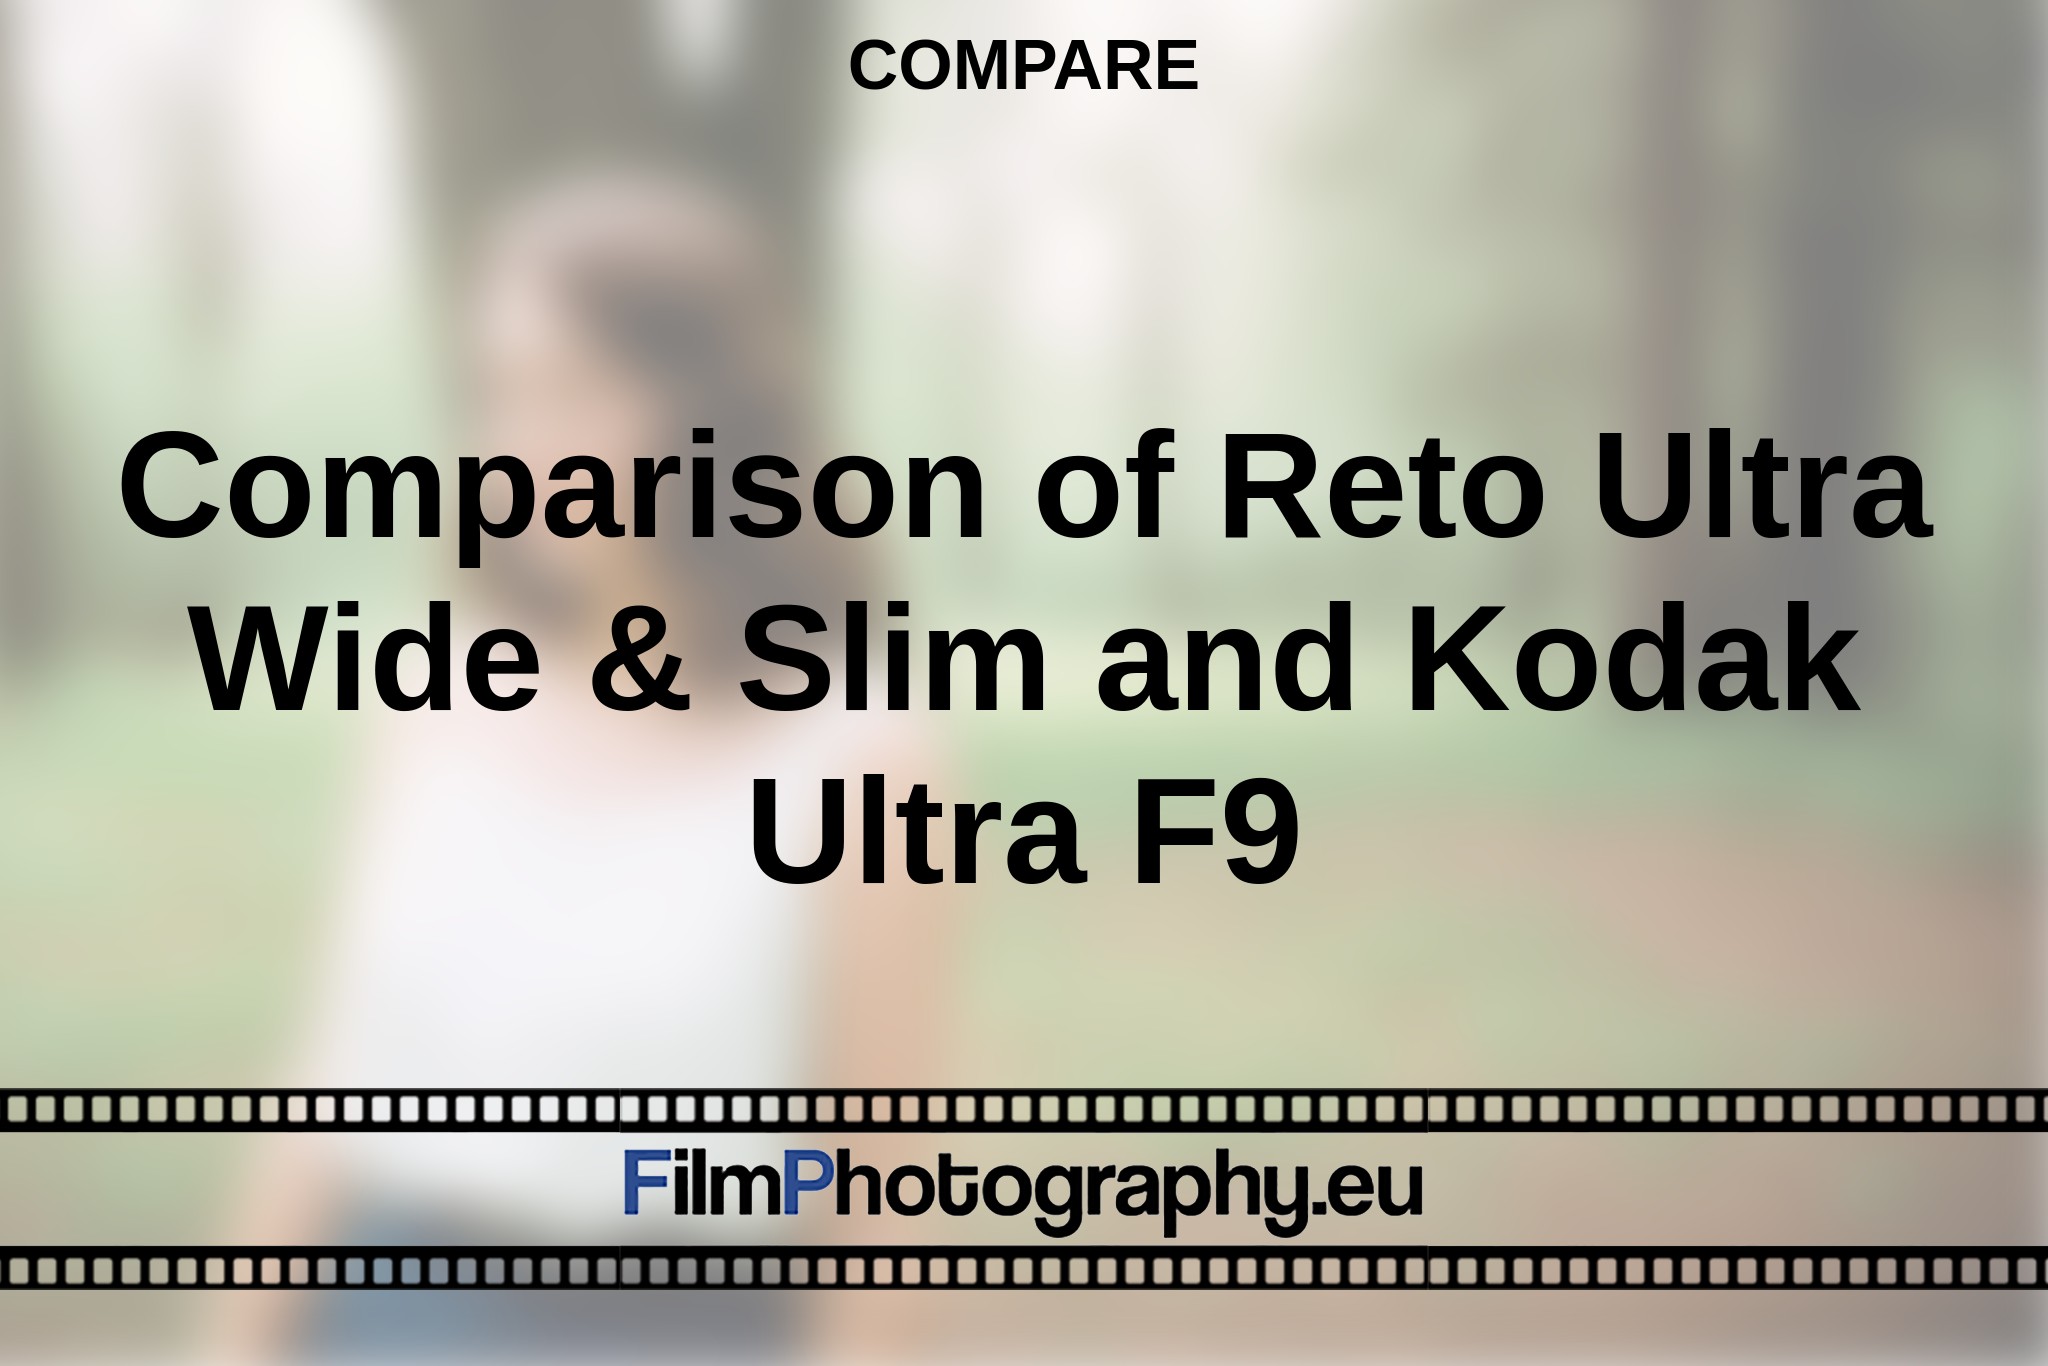 comparison-of-reto-ultra-wide-slim-and-kodak-ultra-f9-compare-bnv.jpg